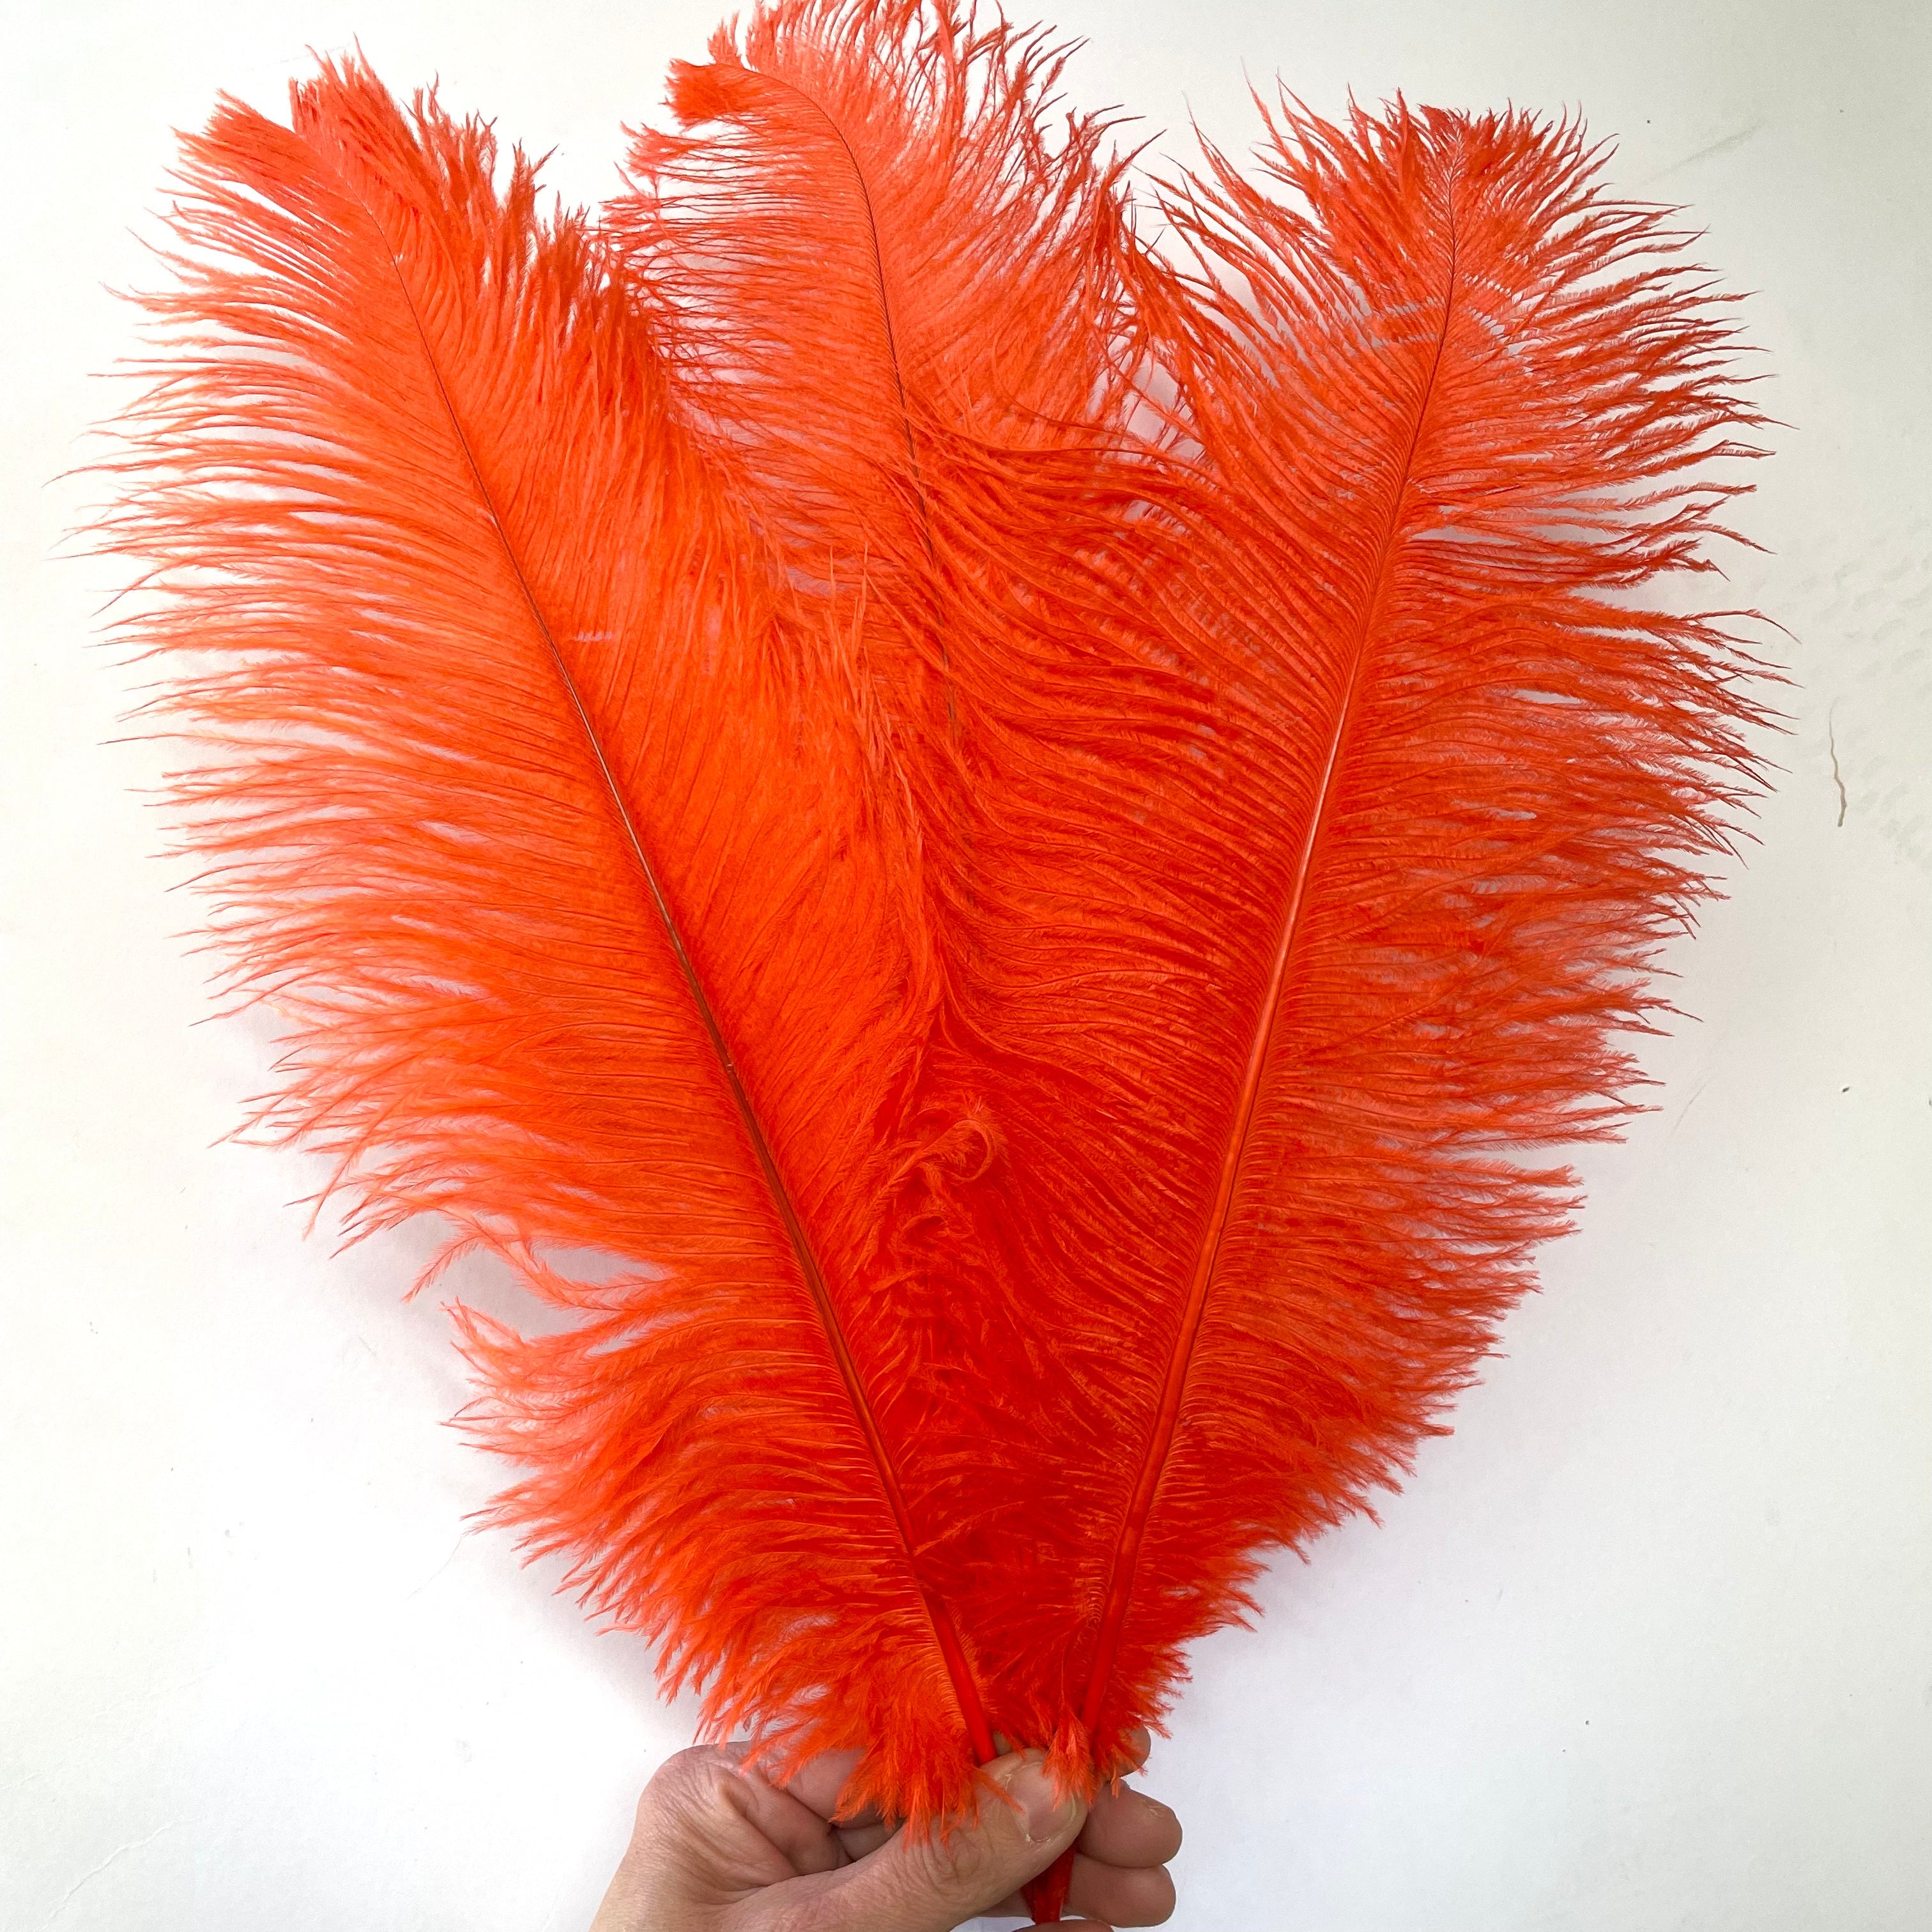 Ostrich Feather Drab 37-42cm x 5pcs - Burnt Orange ((SECONDS))